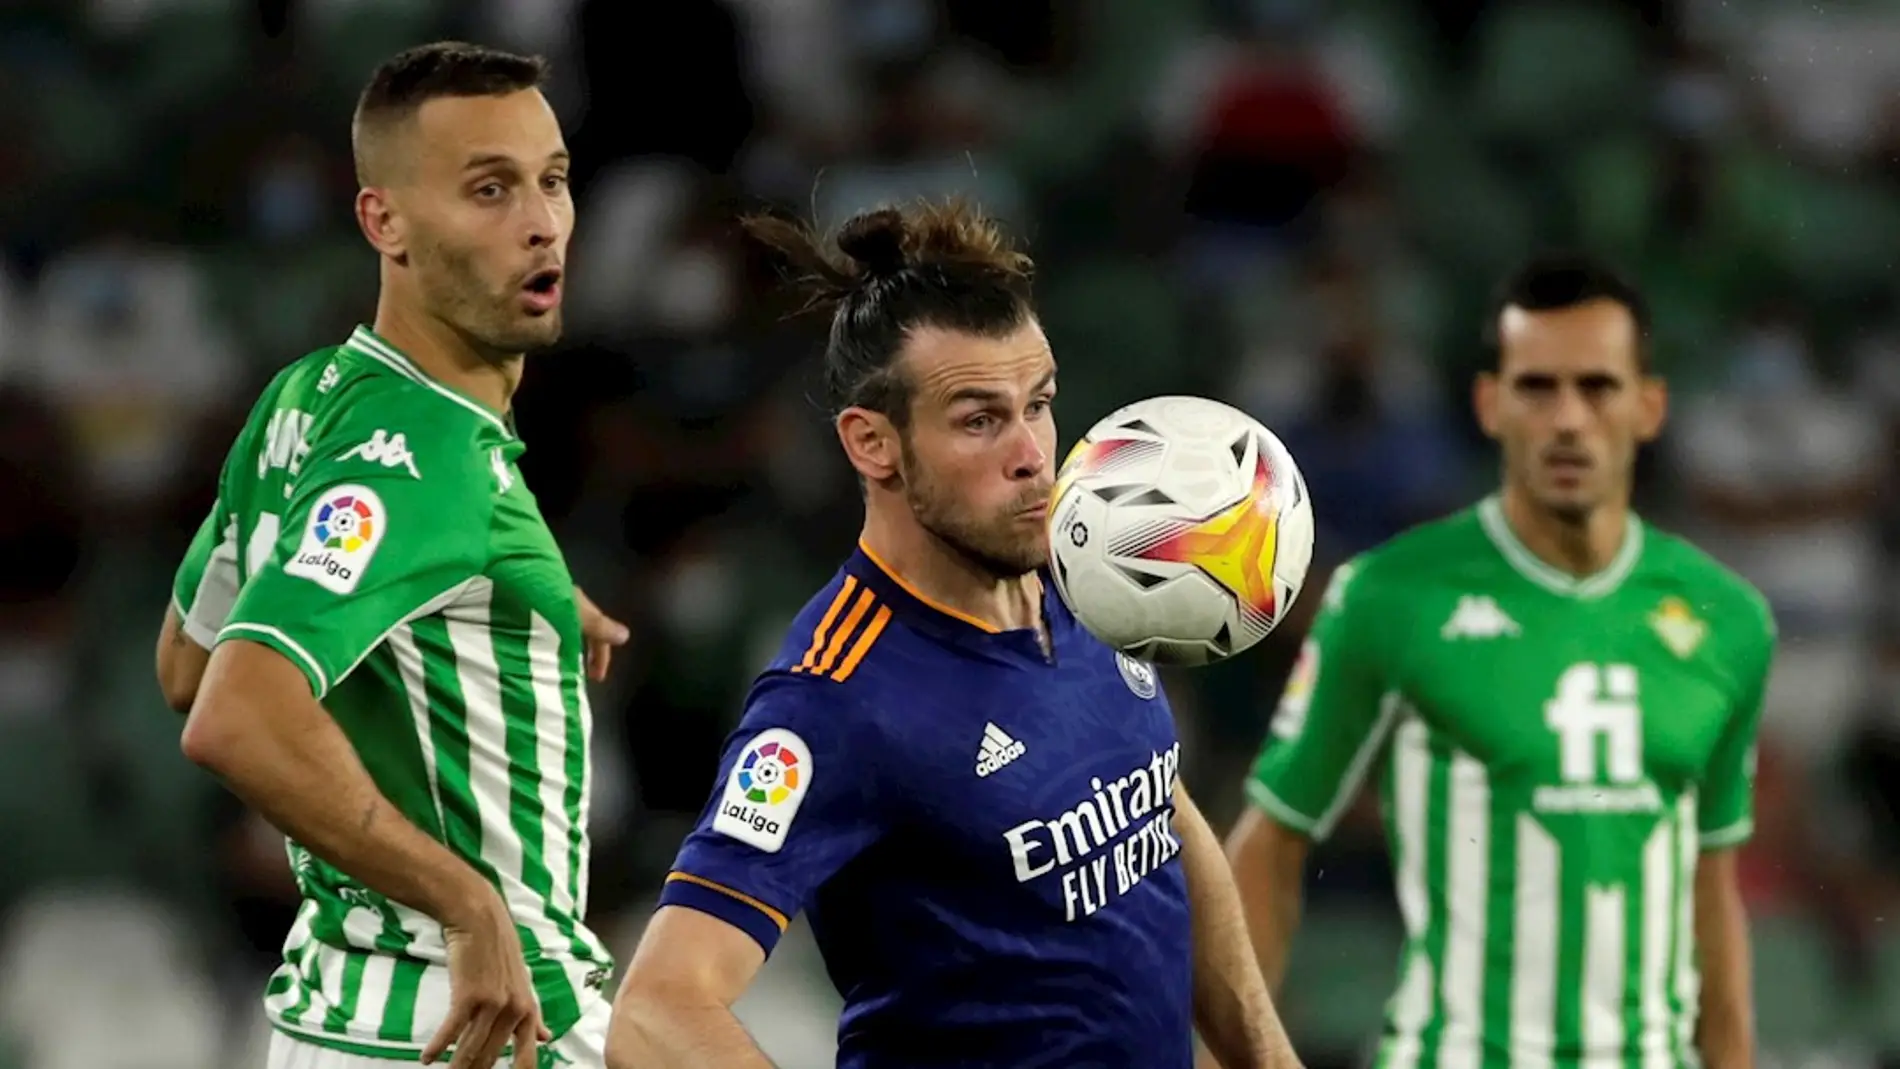 El último partido de Bale con el Real Madrid data del pasado mes de agosto ante el Betis